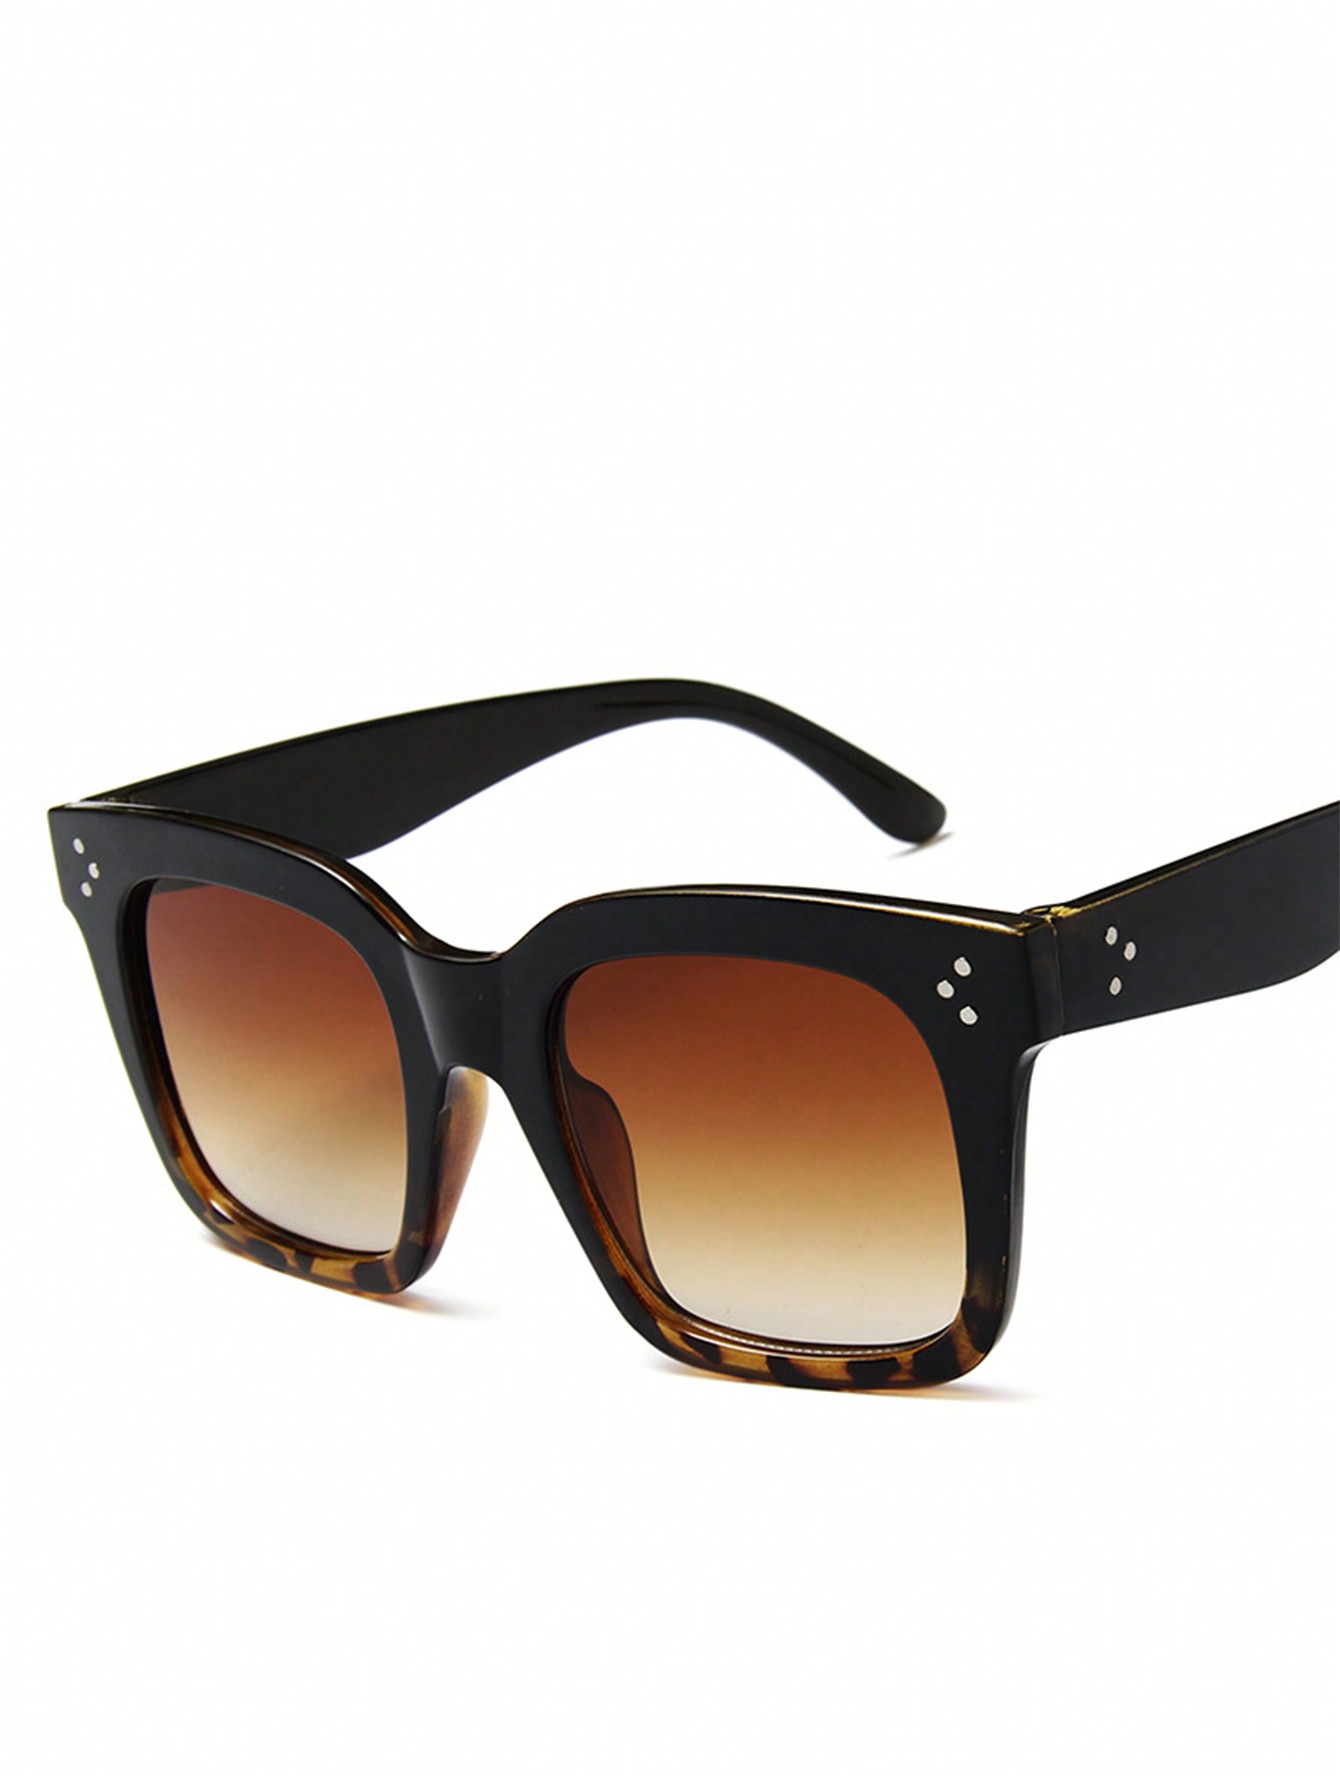 1шт Черные модные солнцезащитные очки в квадратной оправе с цветными зеркальными линзами модные модные очки в квадратной оправе с тонированными линзами